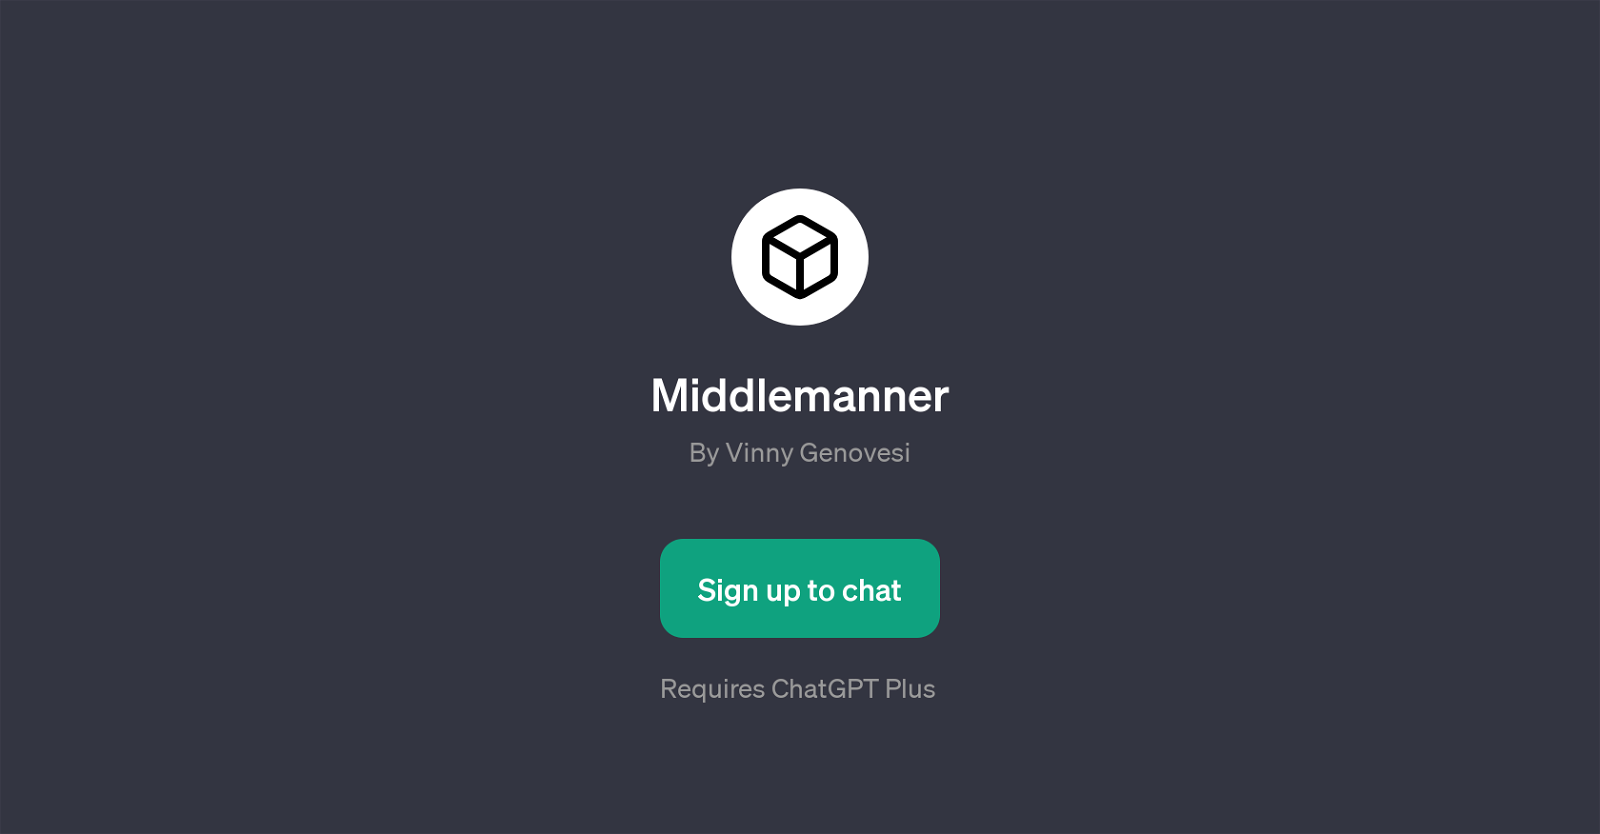 Middlemanner website